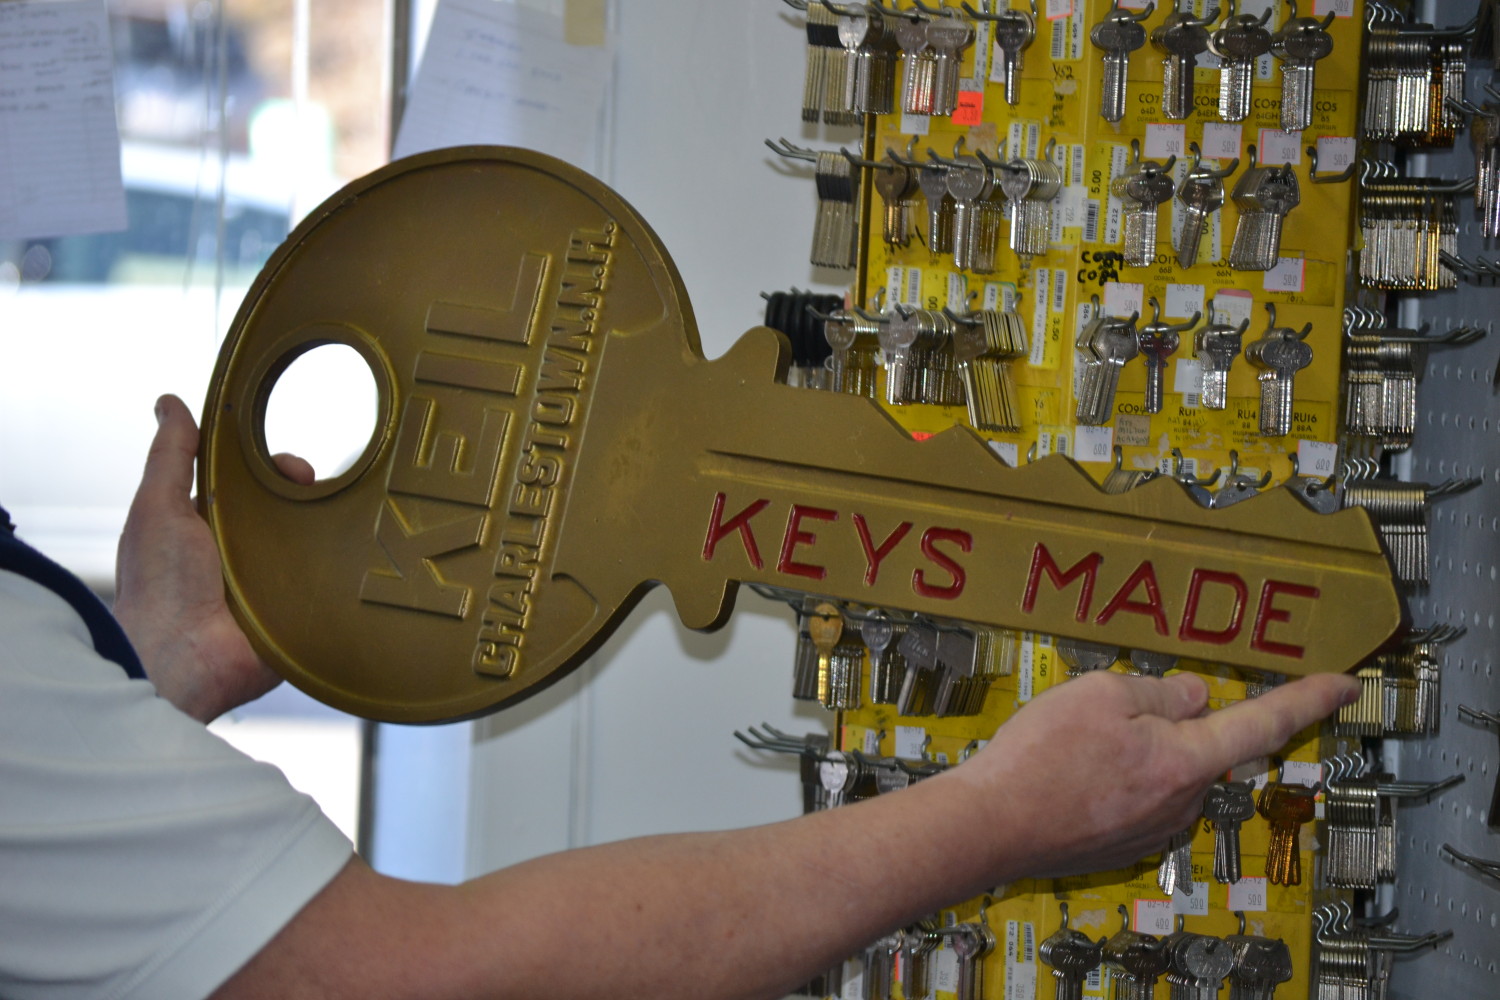 keys made